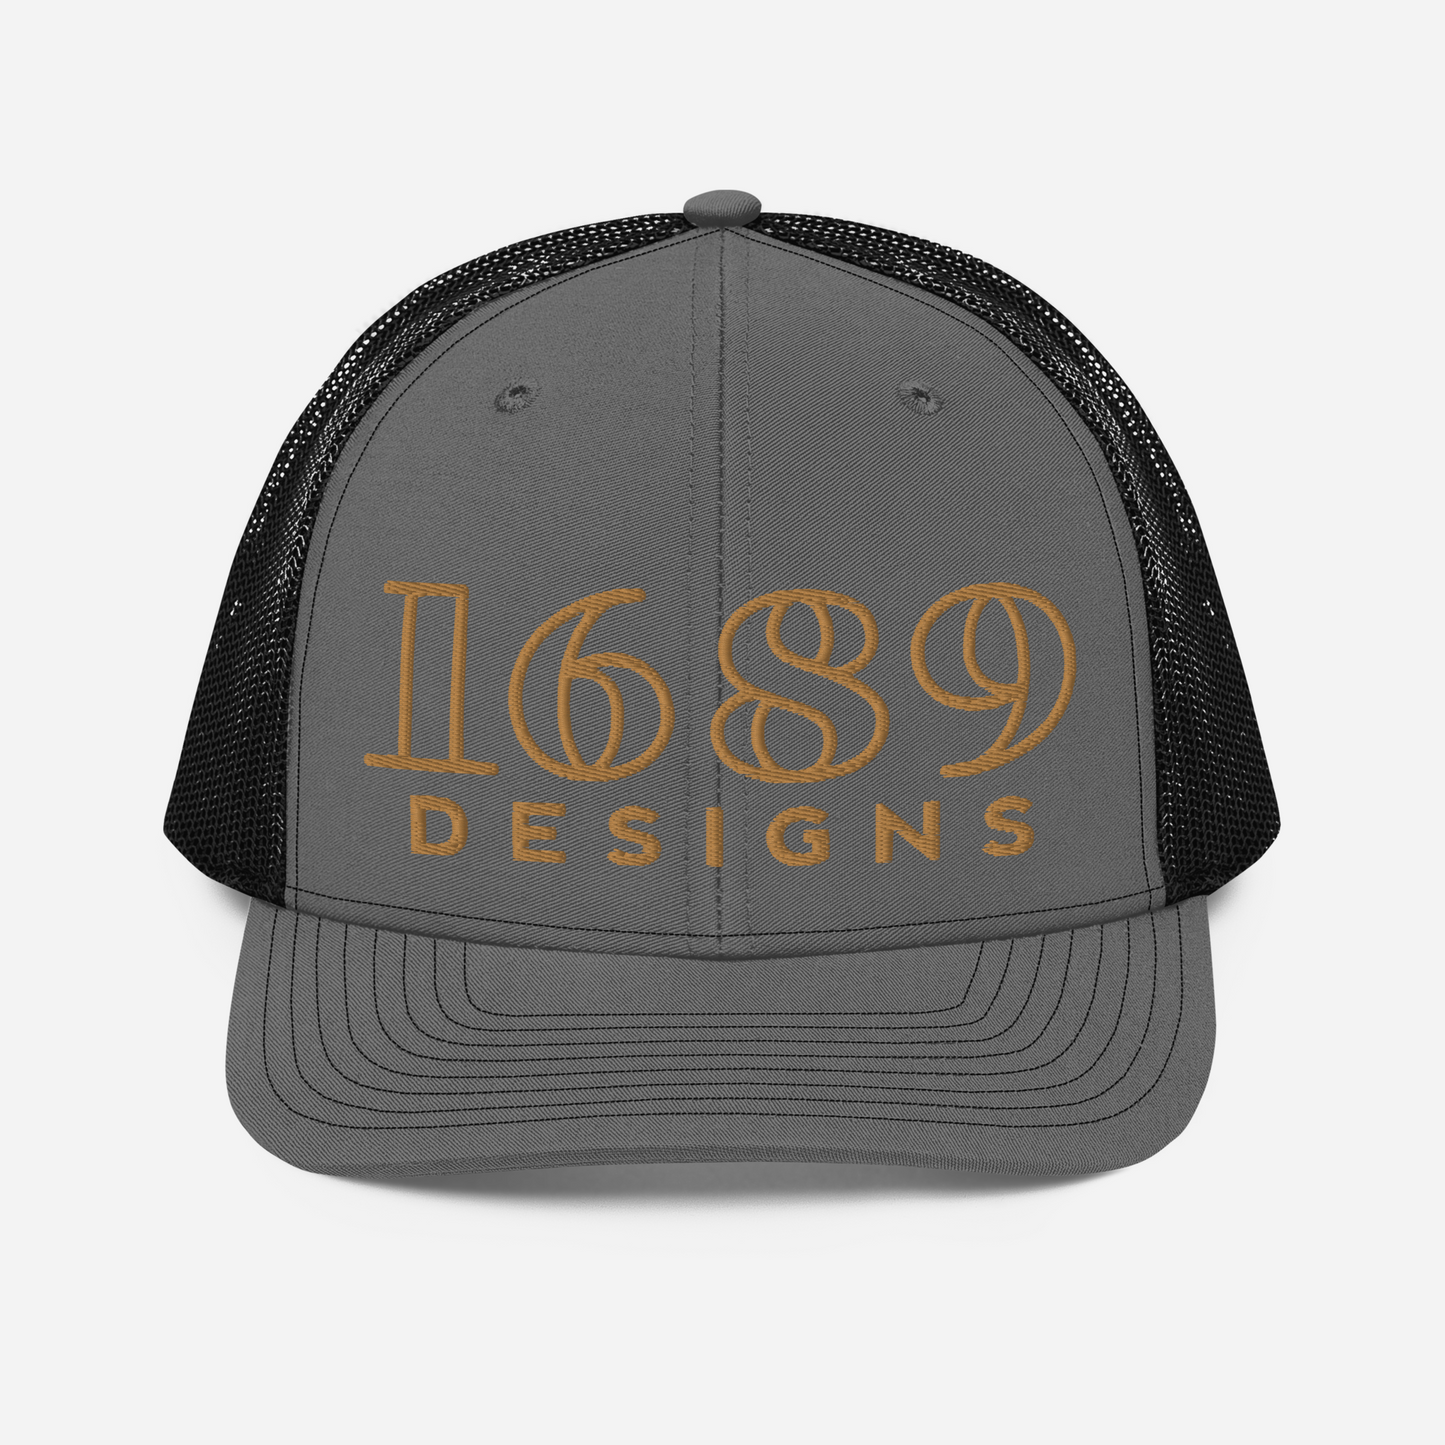 Original 1689 Designs Richardson Trucker Hat